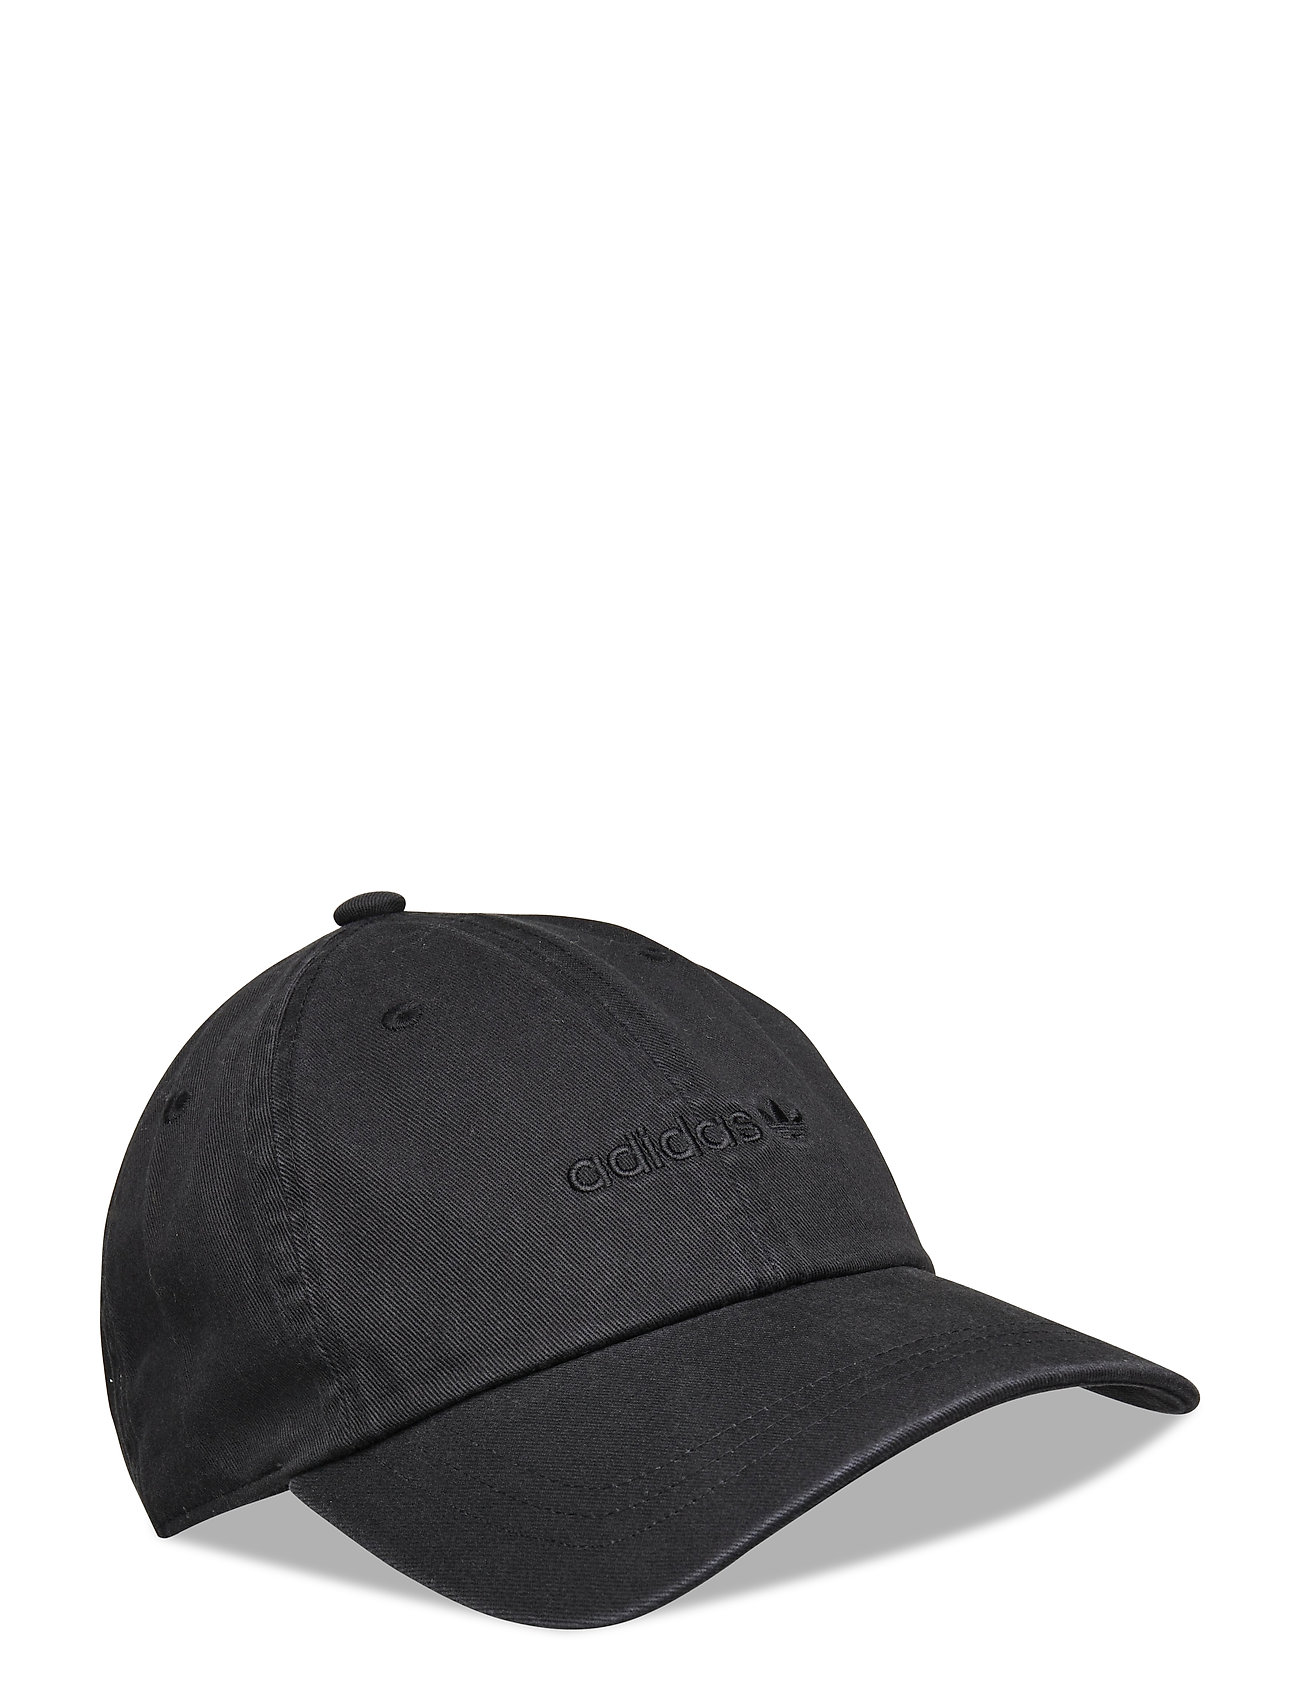 Baseball Cap Accessories Headwear Caps Sort Adidas Originals